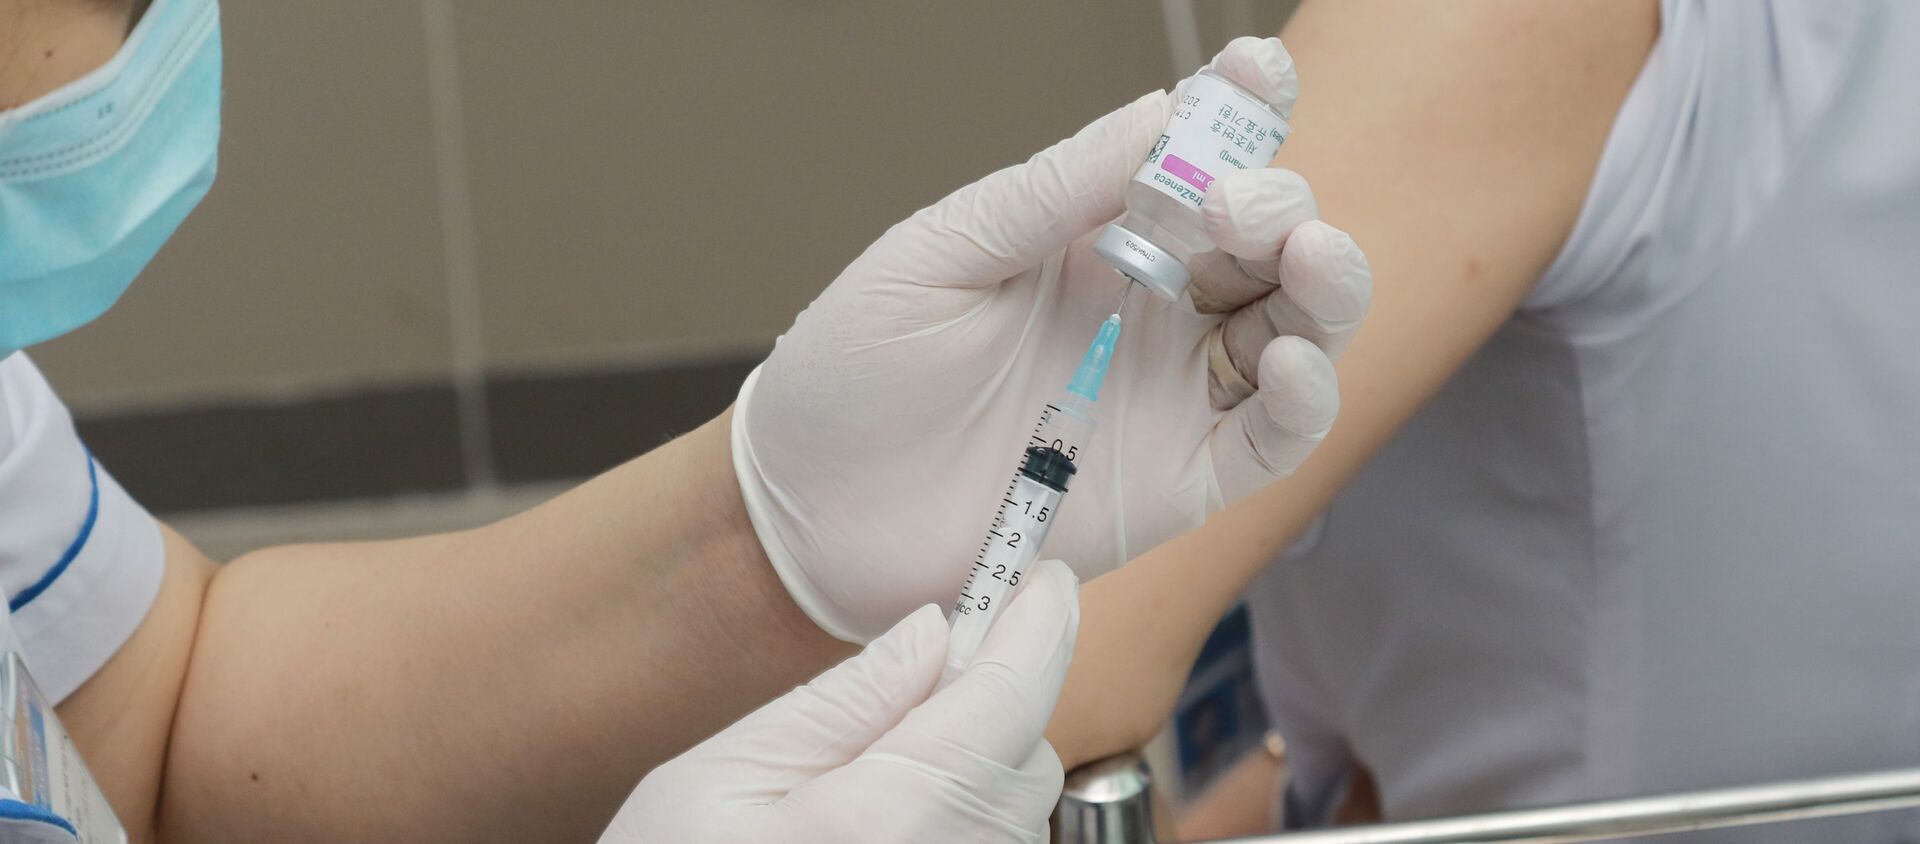 Mũi vaccine đầu tiên được tiêm cho các nhân viên y tế tuyến bệnh viện quận, huyện tại Thành phố Hồ Chí Minh. - Sputnik Việt Nam, 1920, 25.03.2021